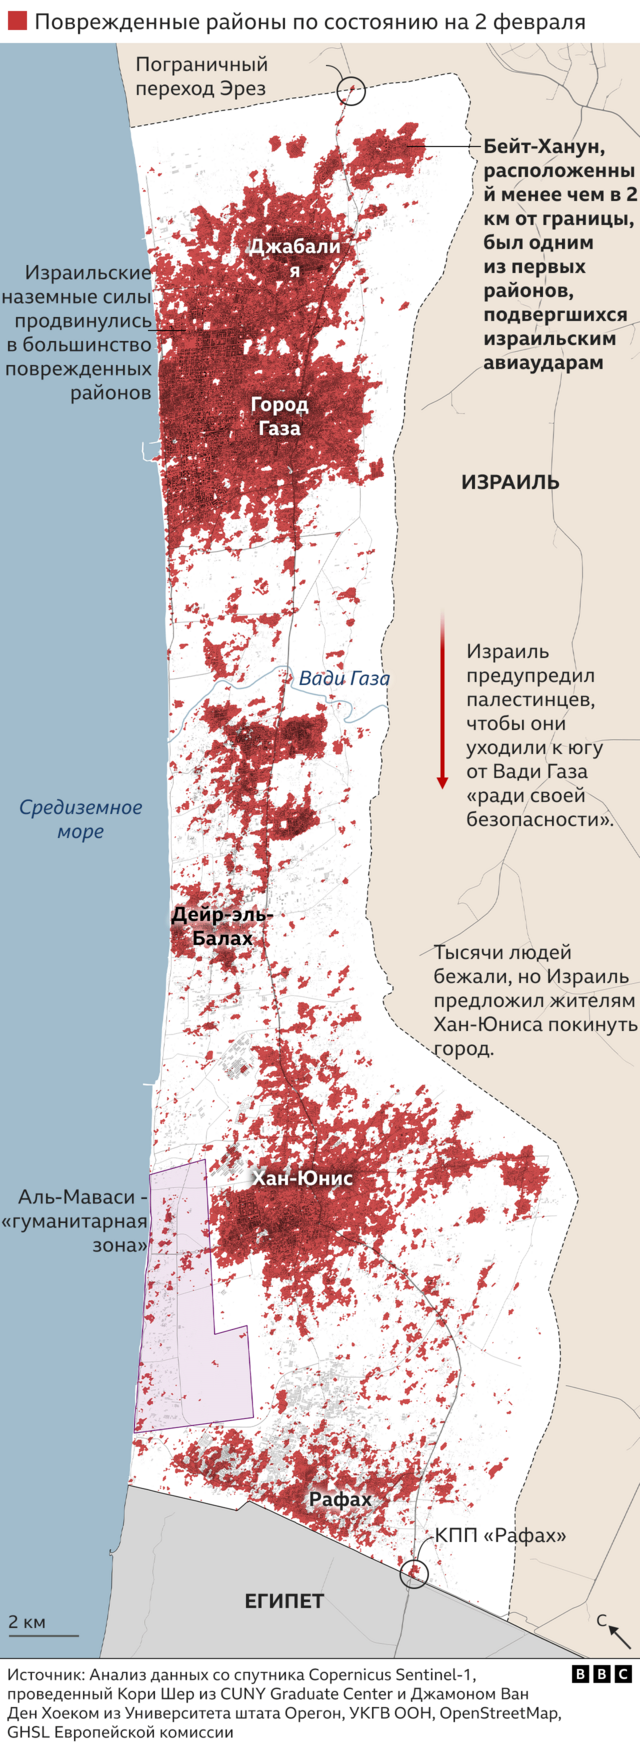 Карта повреждений зданий в Газе